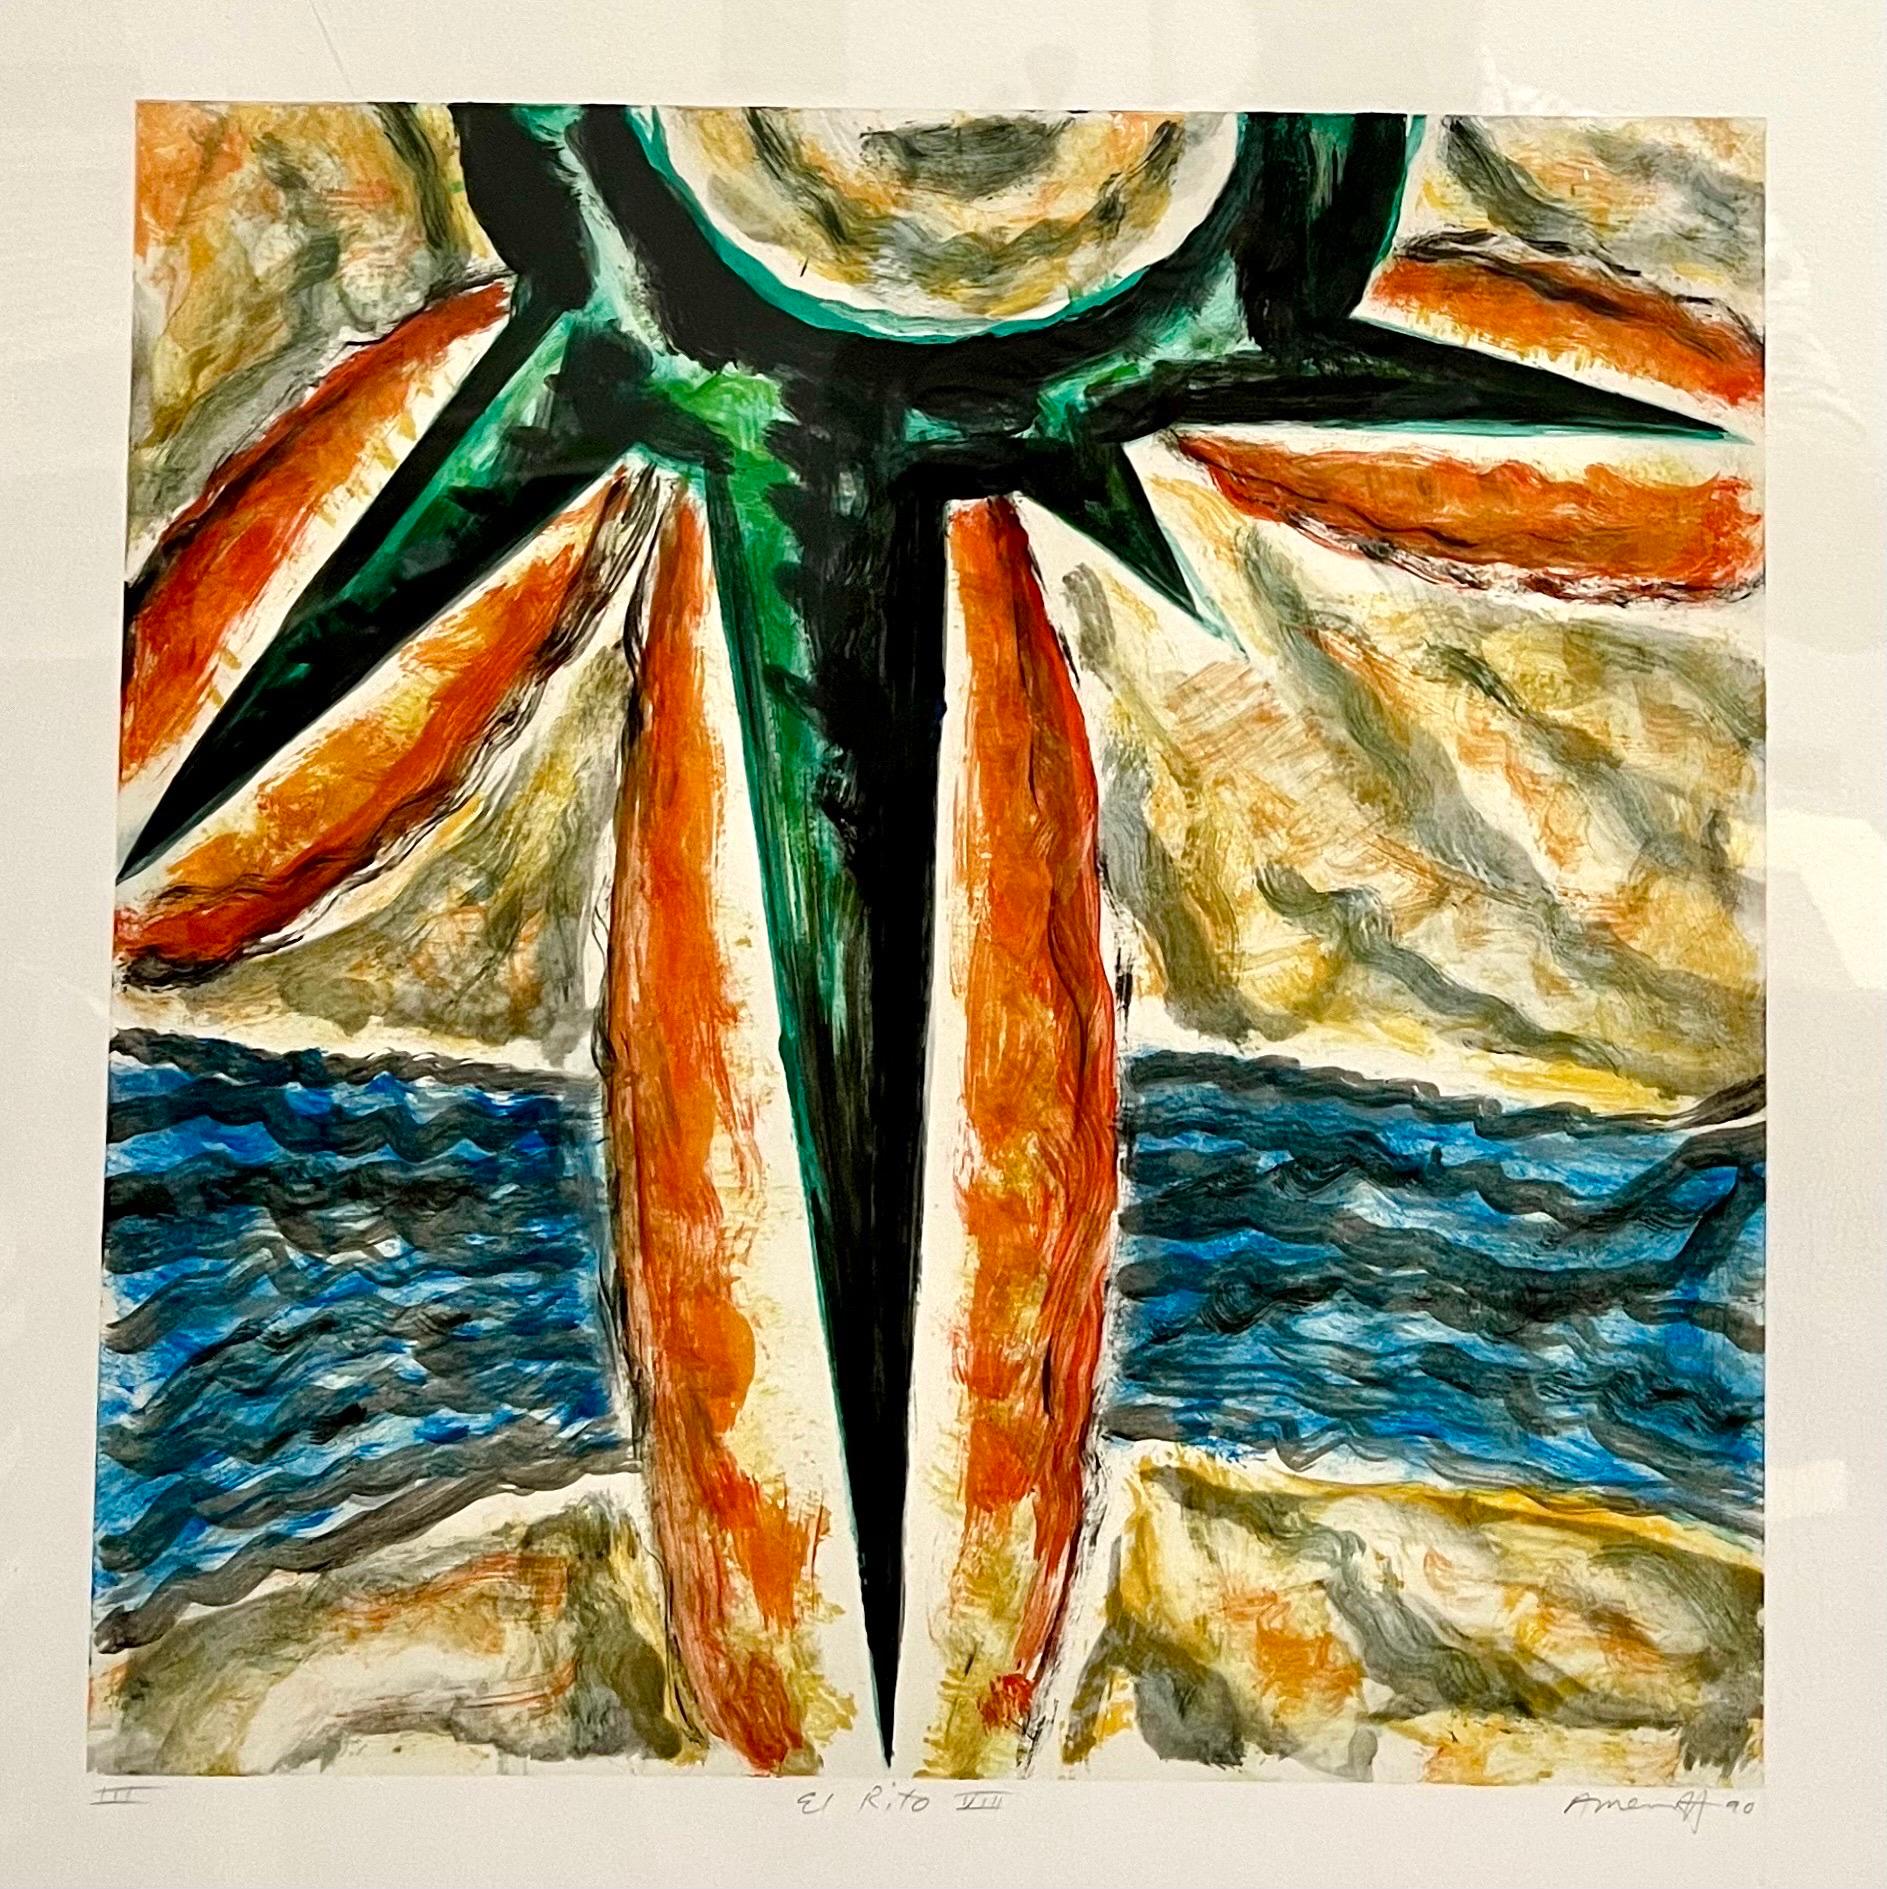 Gregory Amenoff (peintre abstrait américain contemporain, né en 1948),  
Monotype Monoprint (1990)
Signature manuscrite au crayon en bas à droite
plaque : 16 x 16 pouces
dimensions du cadre : 35 1/8 x 29 1/8 x 1 5/8 pouces, cadre en bois avec